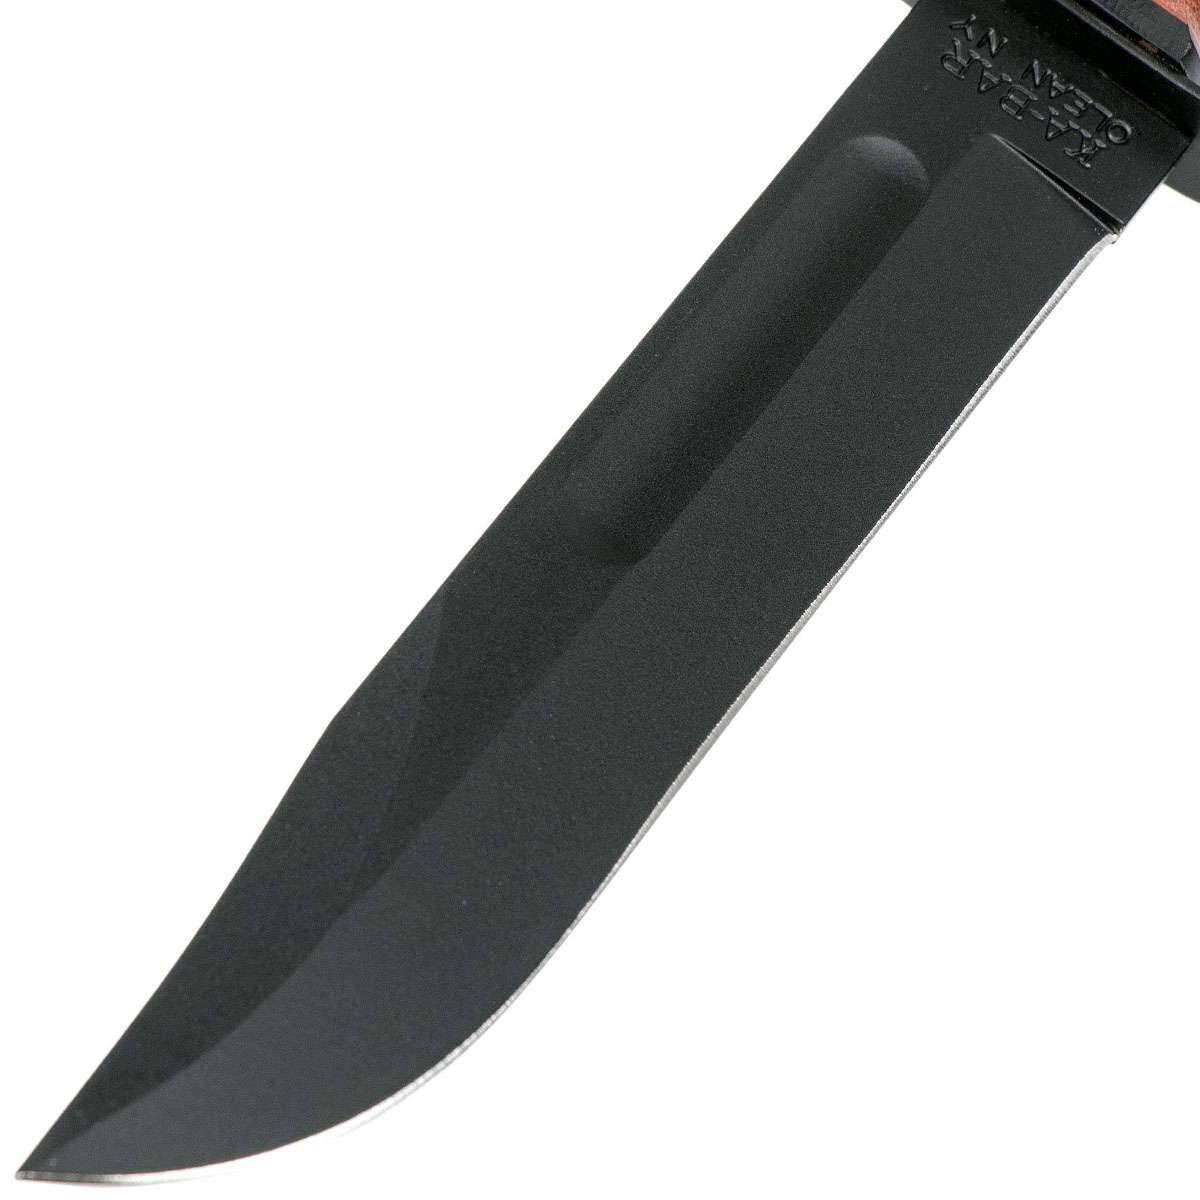 KA-BAR Single Mark 1320 Knife